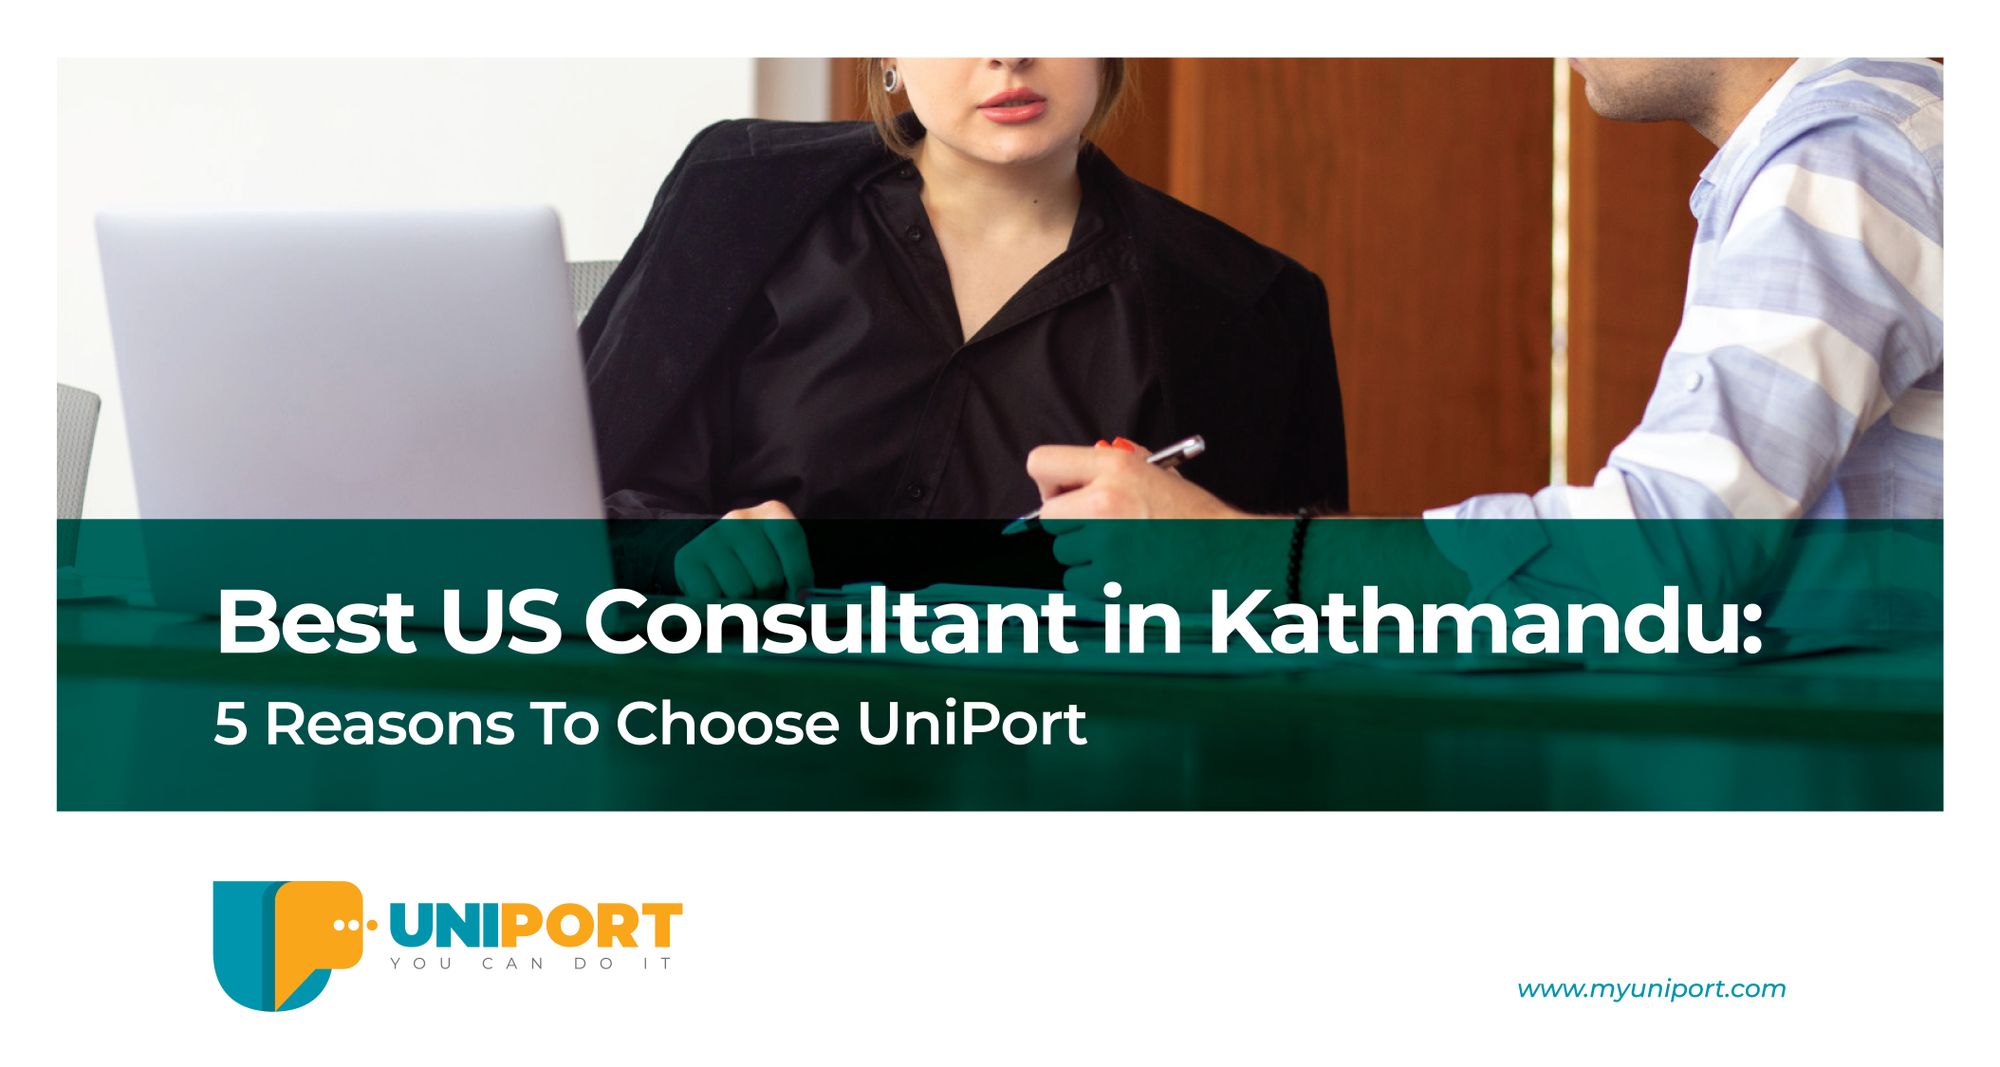 Best US Consultant in Kathmandu: 5 Reasons To Choose UniPort